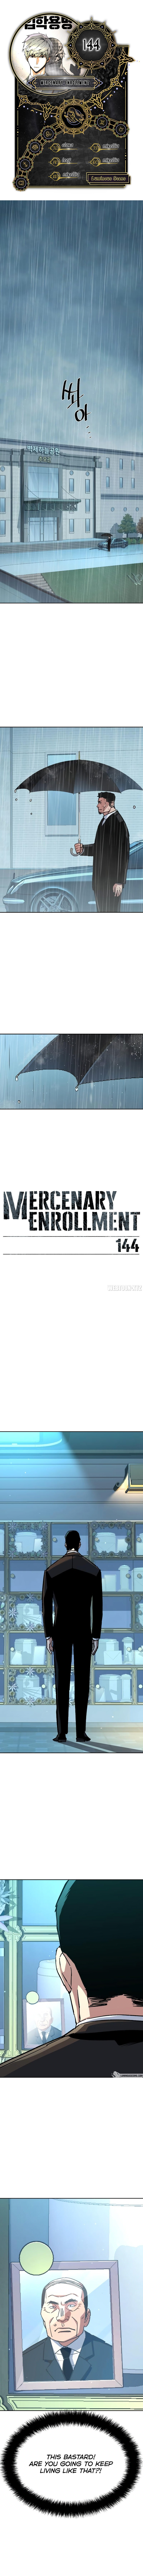 mercenary-enrollment-chap-144-0